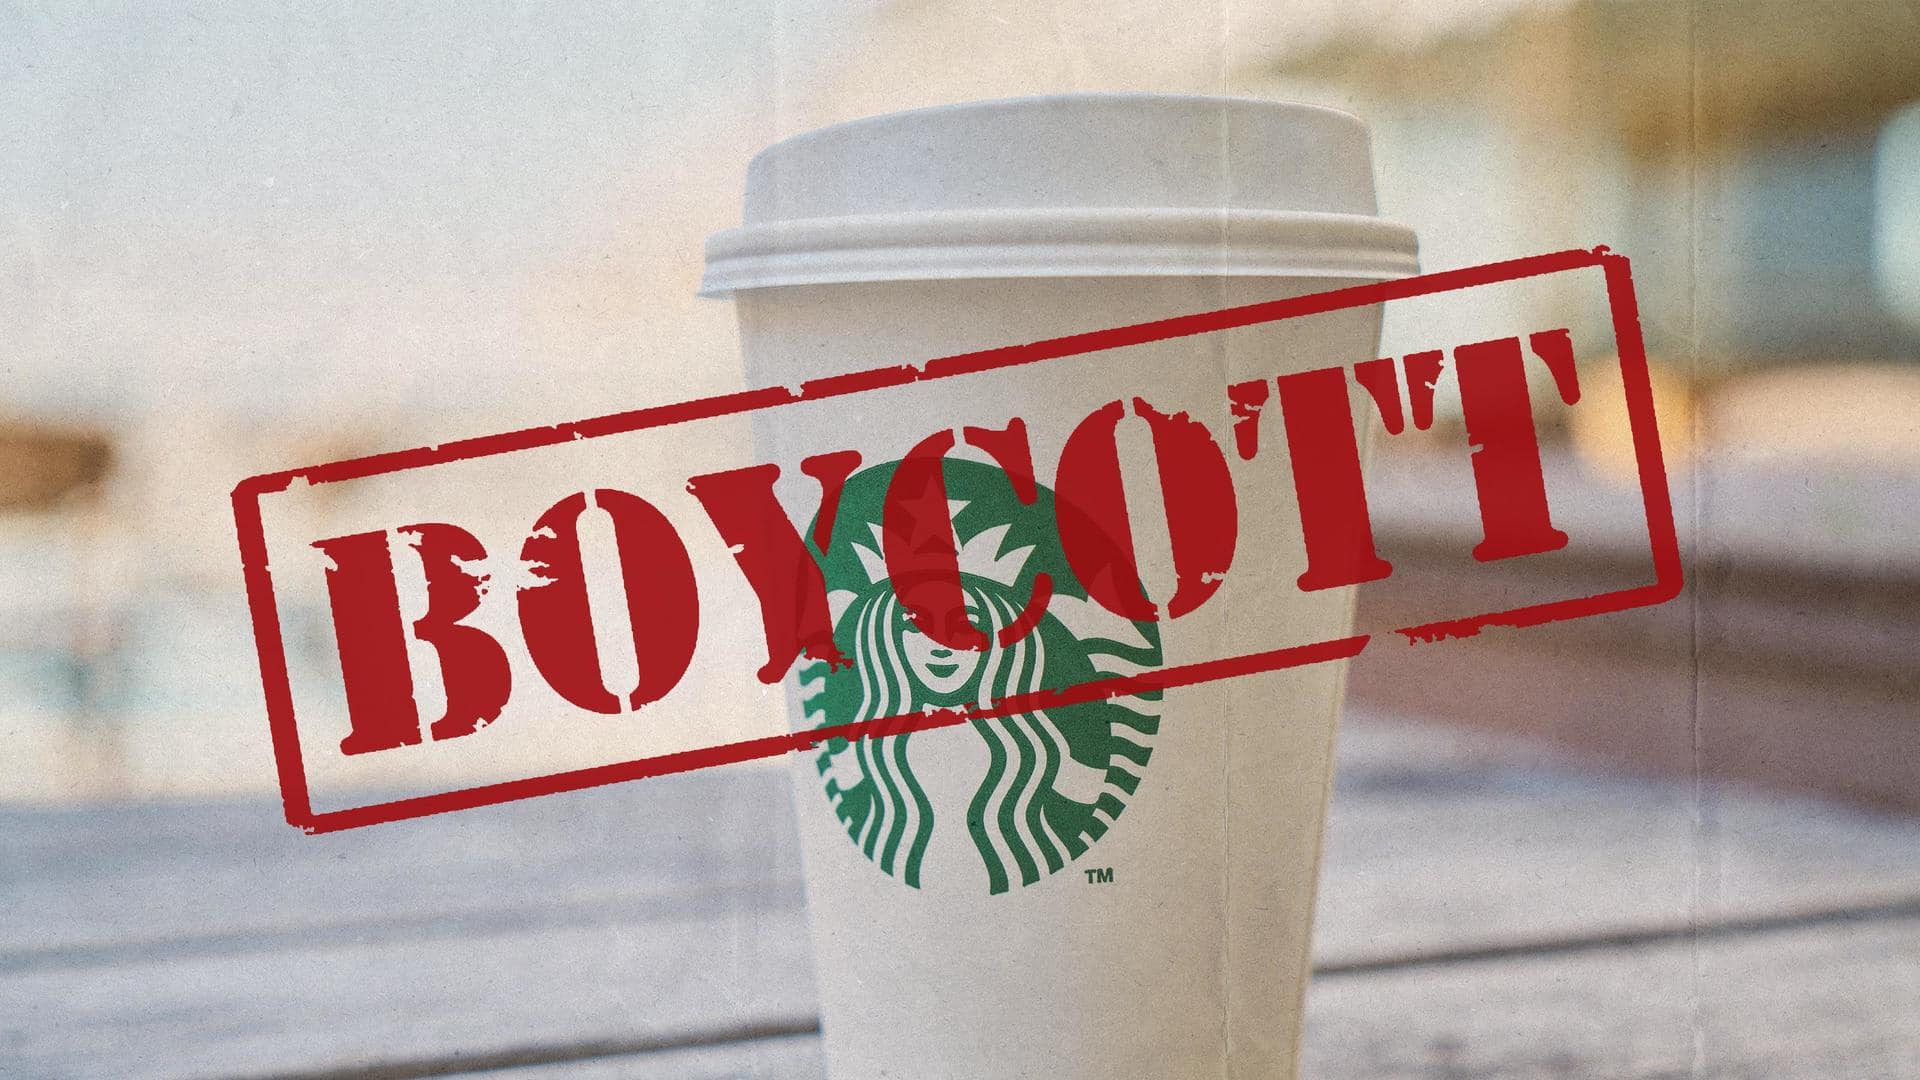 Backlash on Starbucks over transgender acceptance: 'Boycott Starbucks' trends